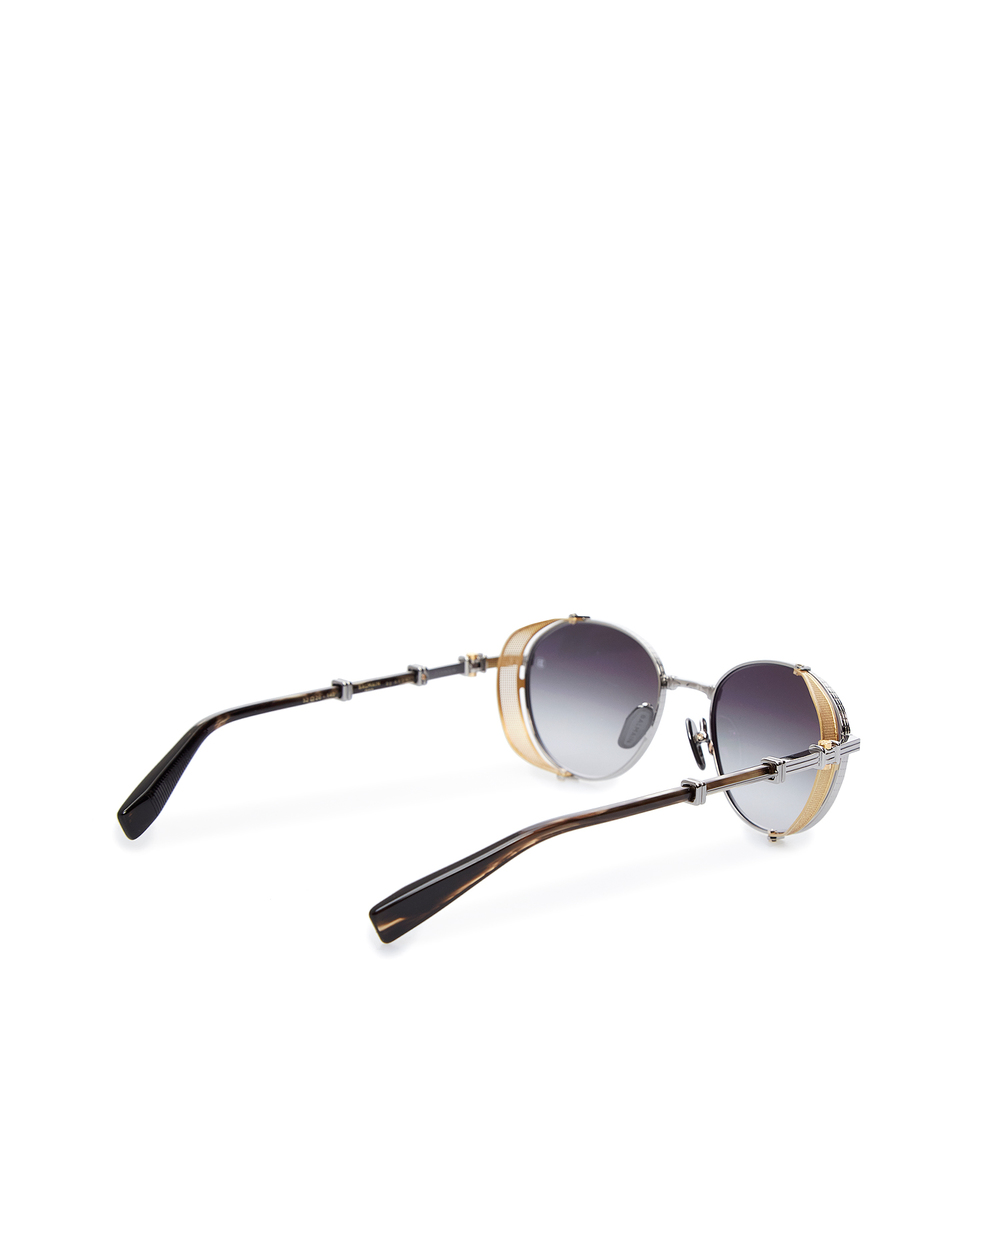 Солнцезащитные очки Brigade I Balmain BPS-110B-52, серебряный цвет • Купить в интернет-магазине Kameron